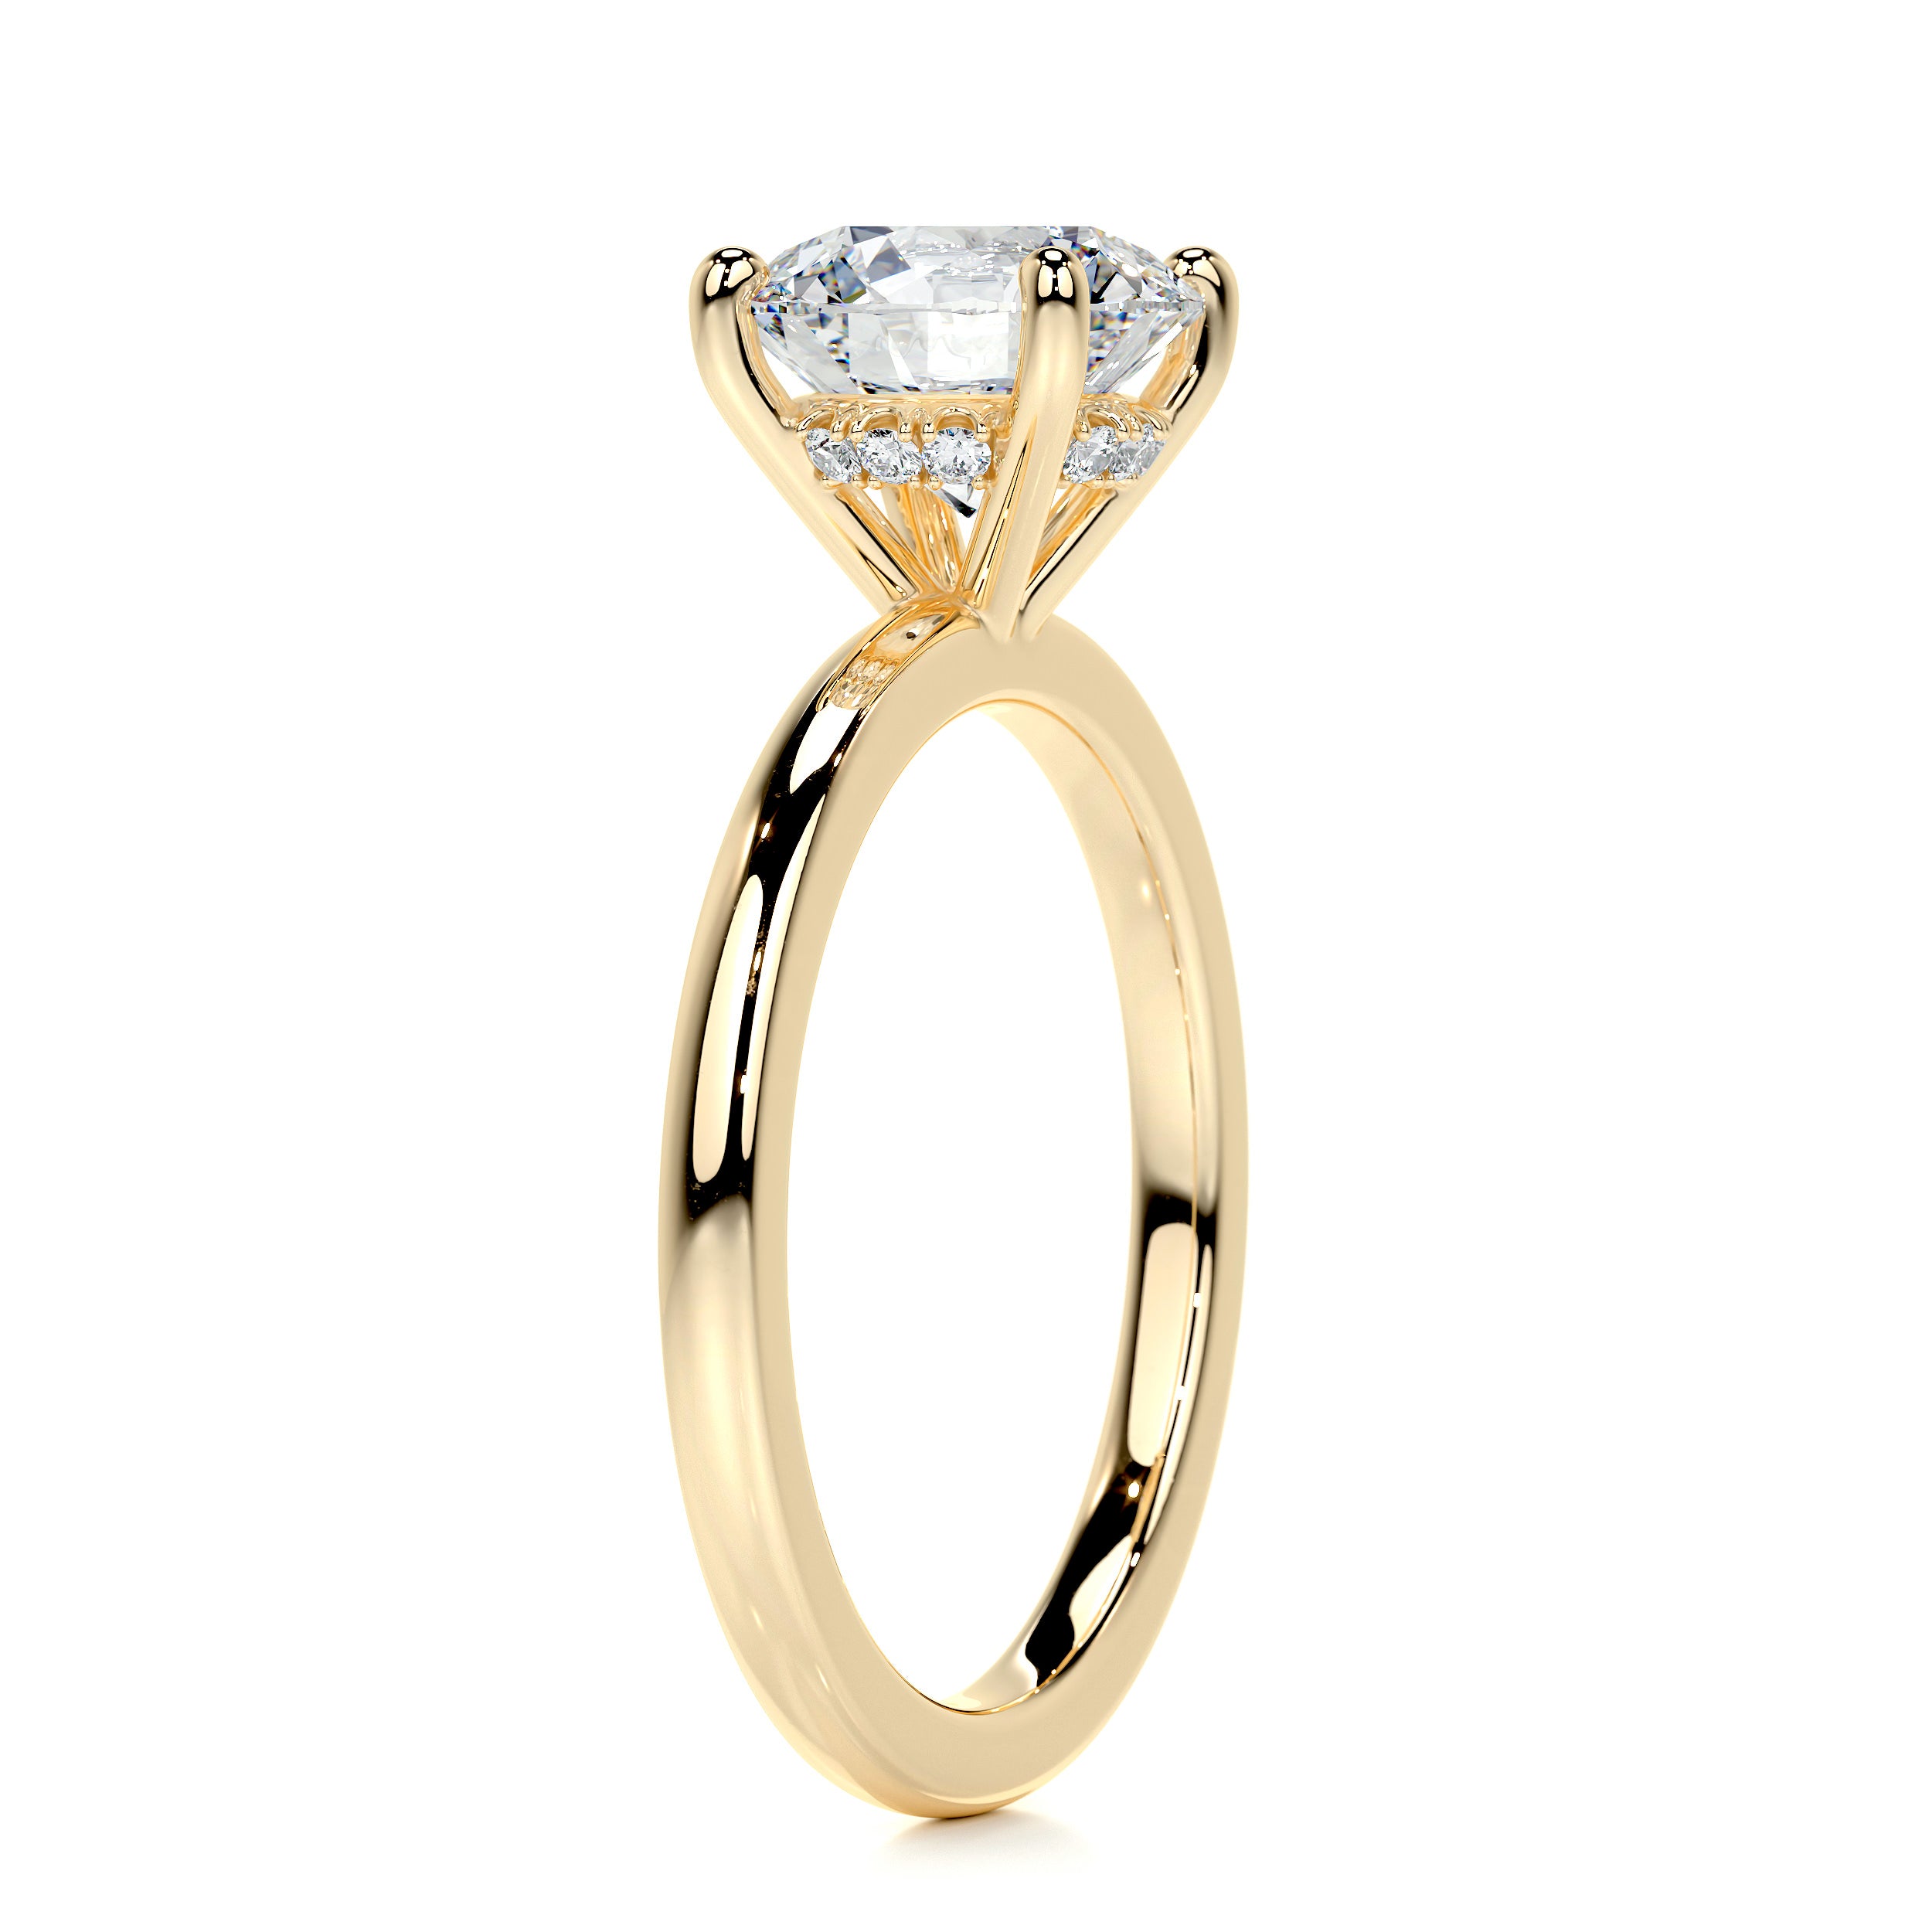 Cynthia Diamond Engagement Ring   (2.1 Carat) -18K Yellow Gold